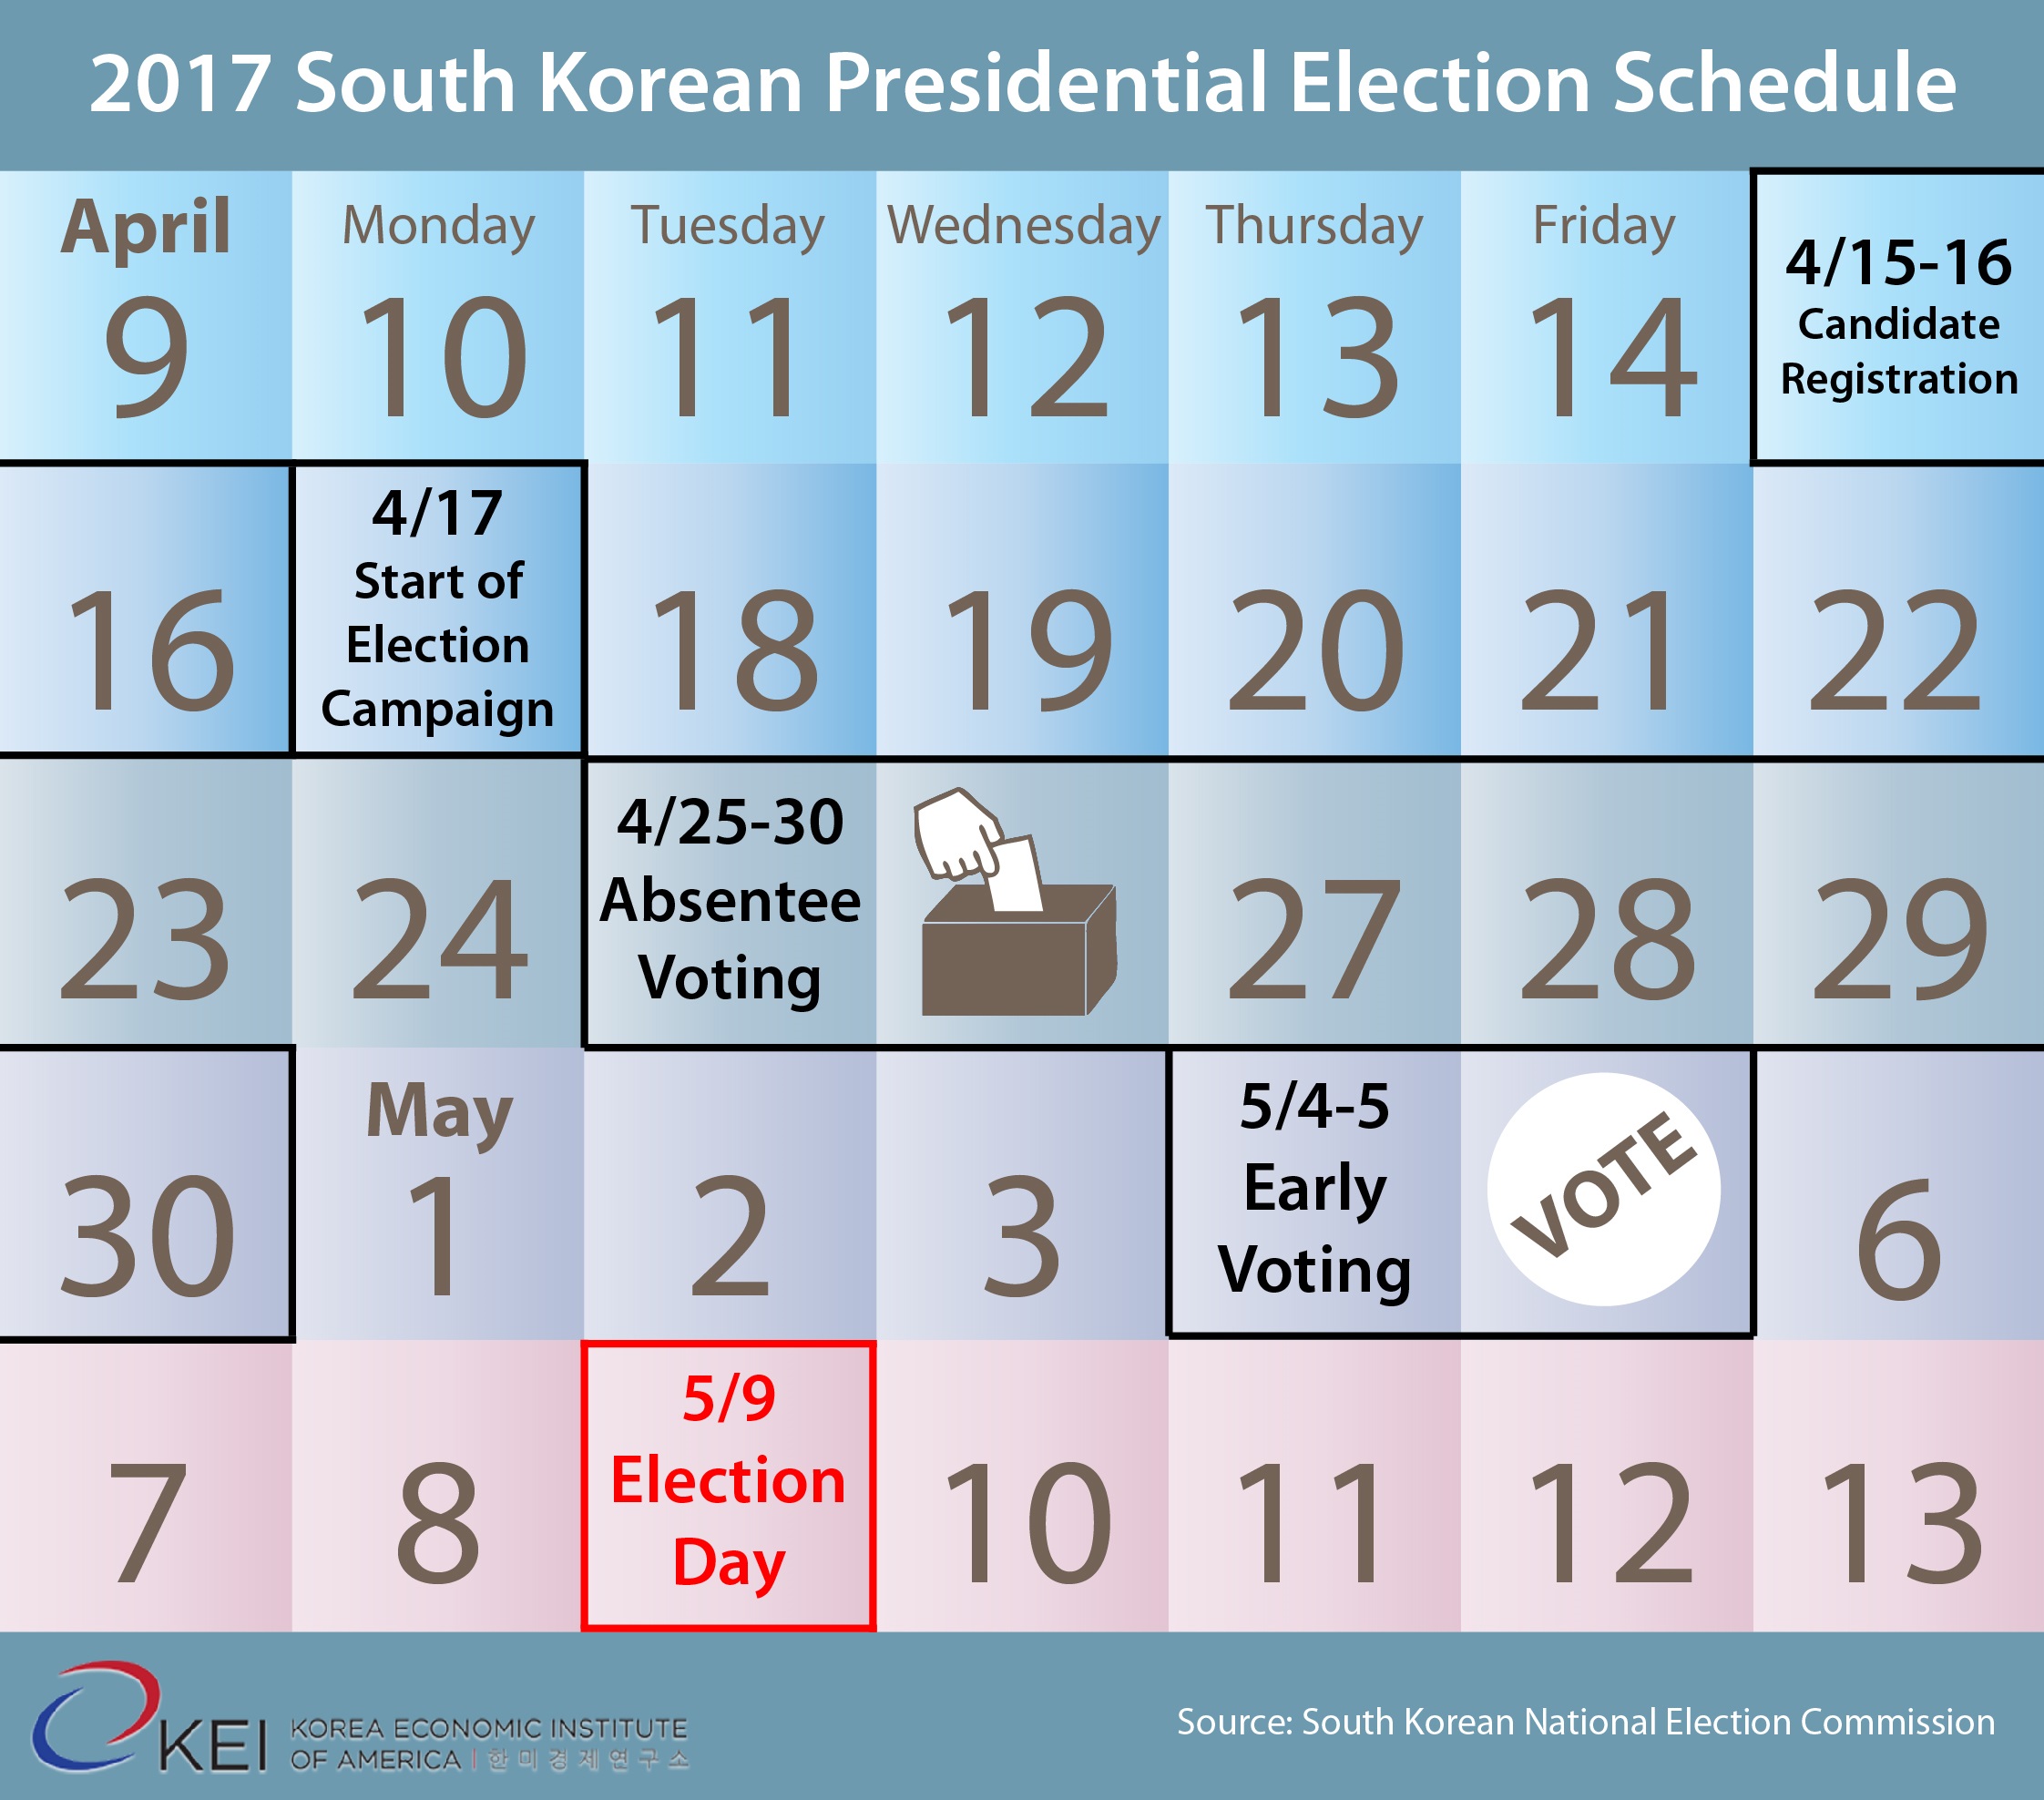 Election Calendar